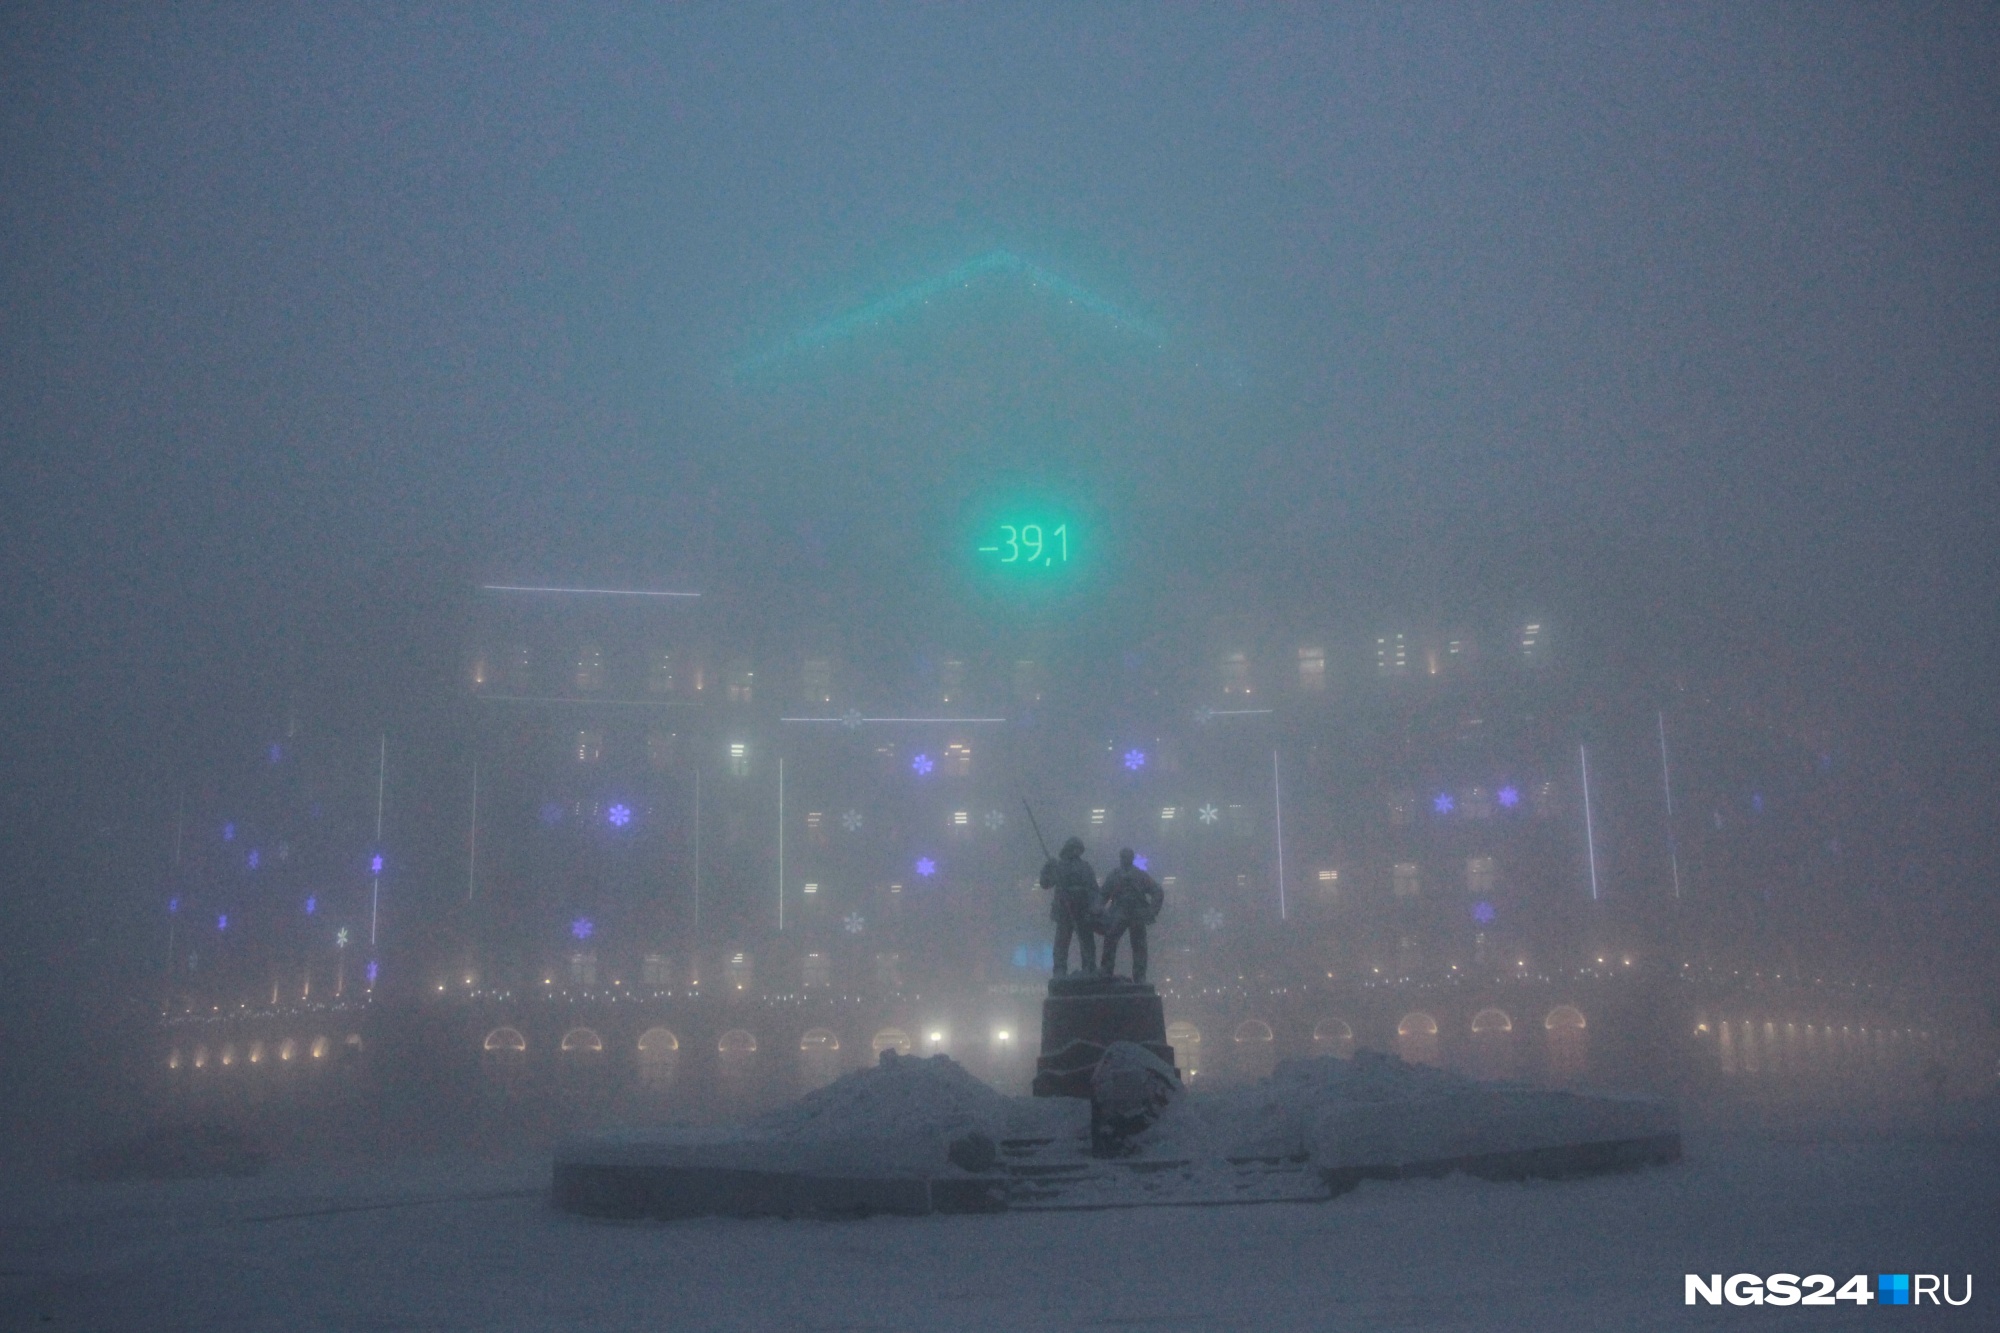 Памятник металлургам Норильска и здания на Гвардейской площади скрыты за густым туманом